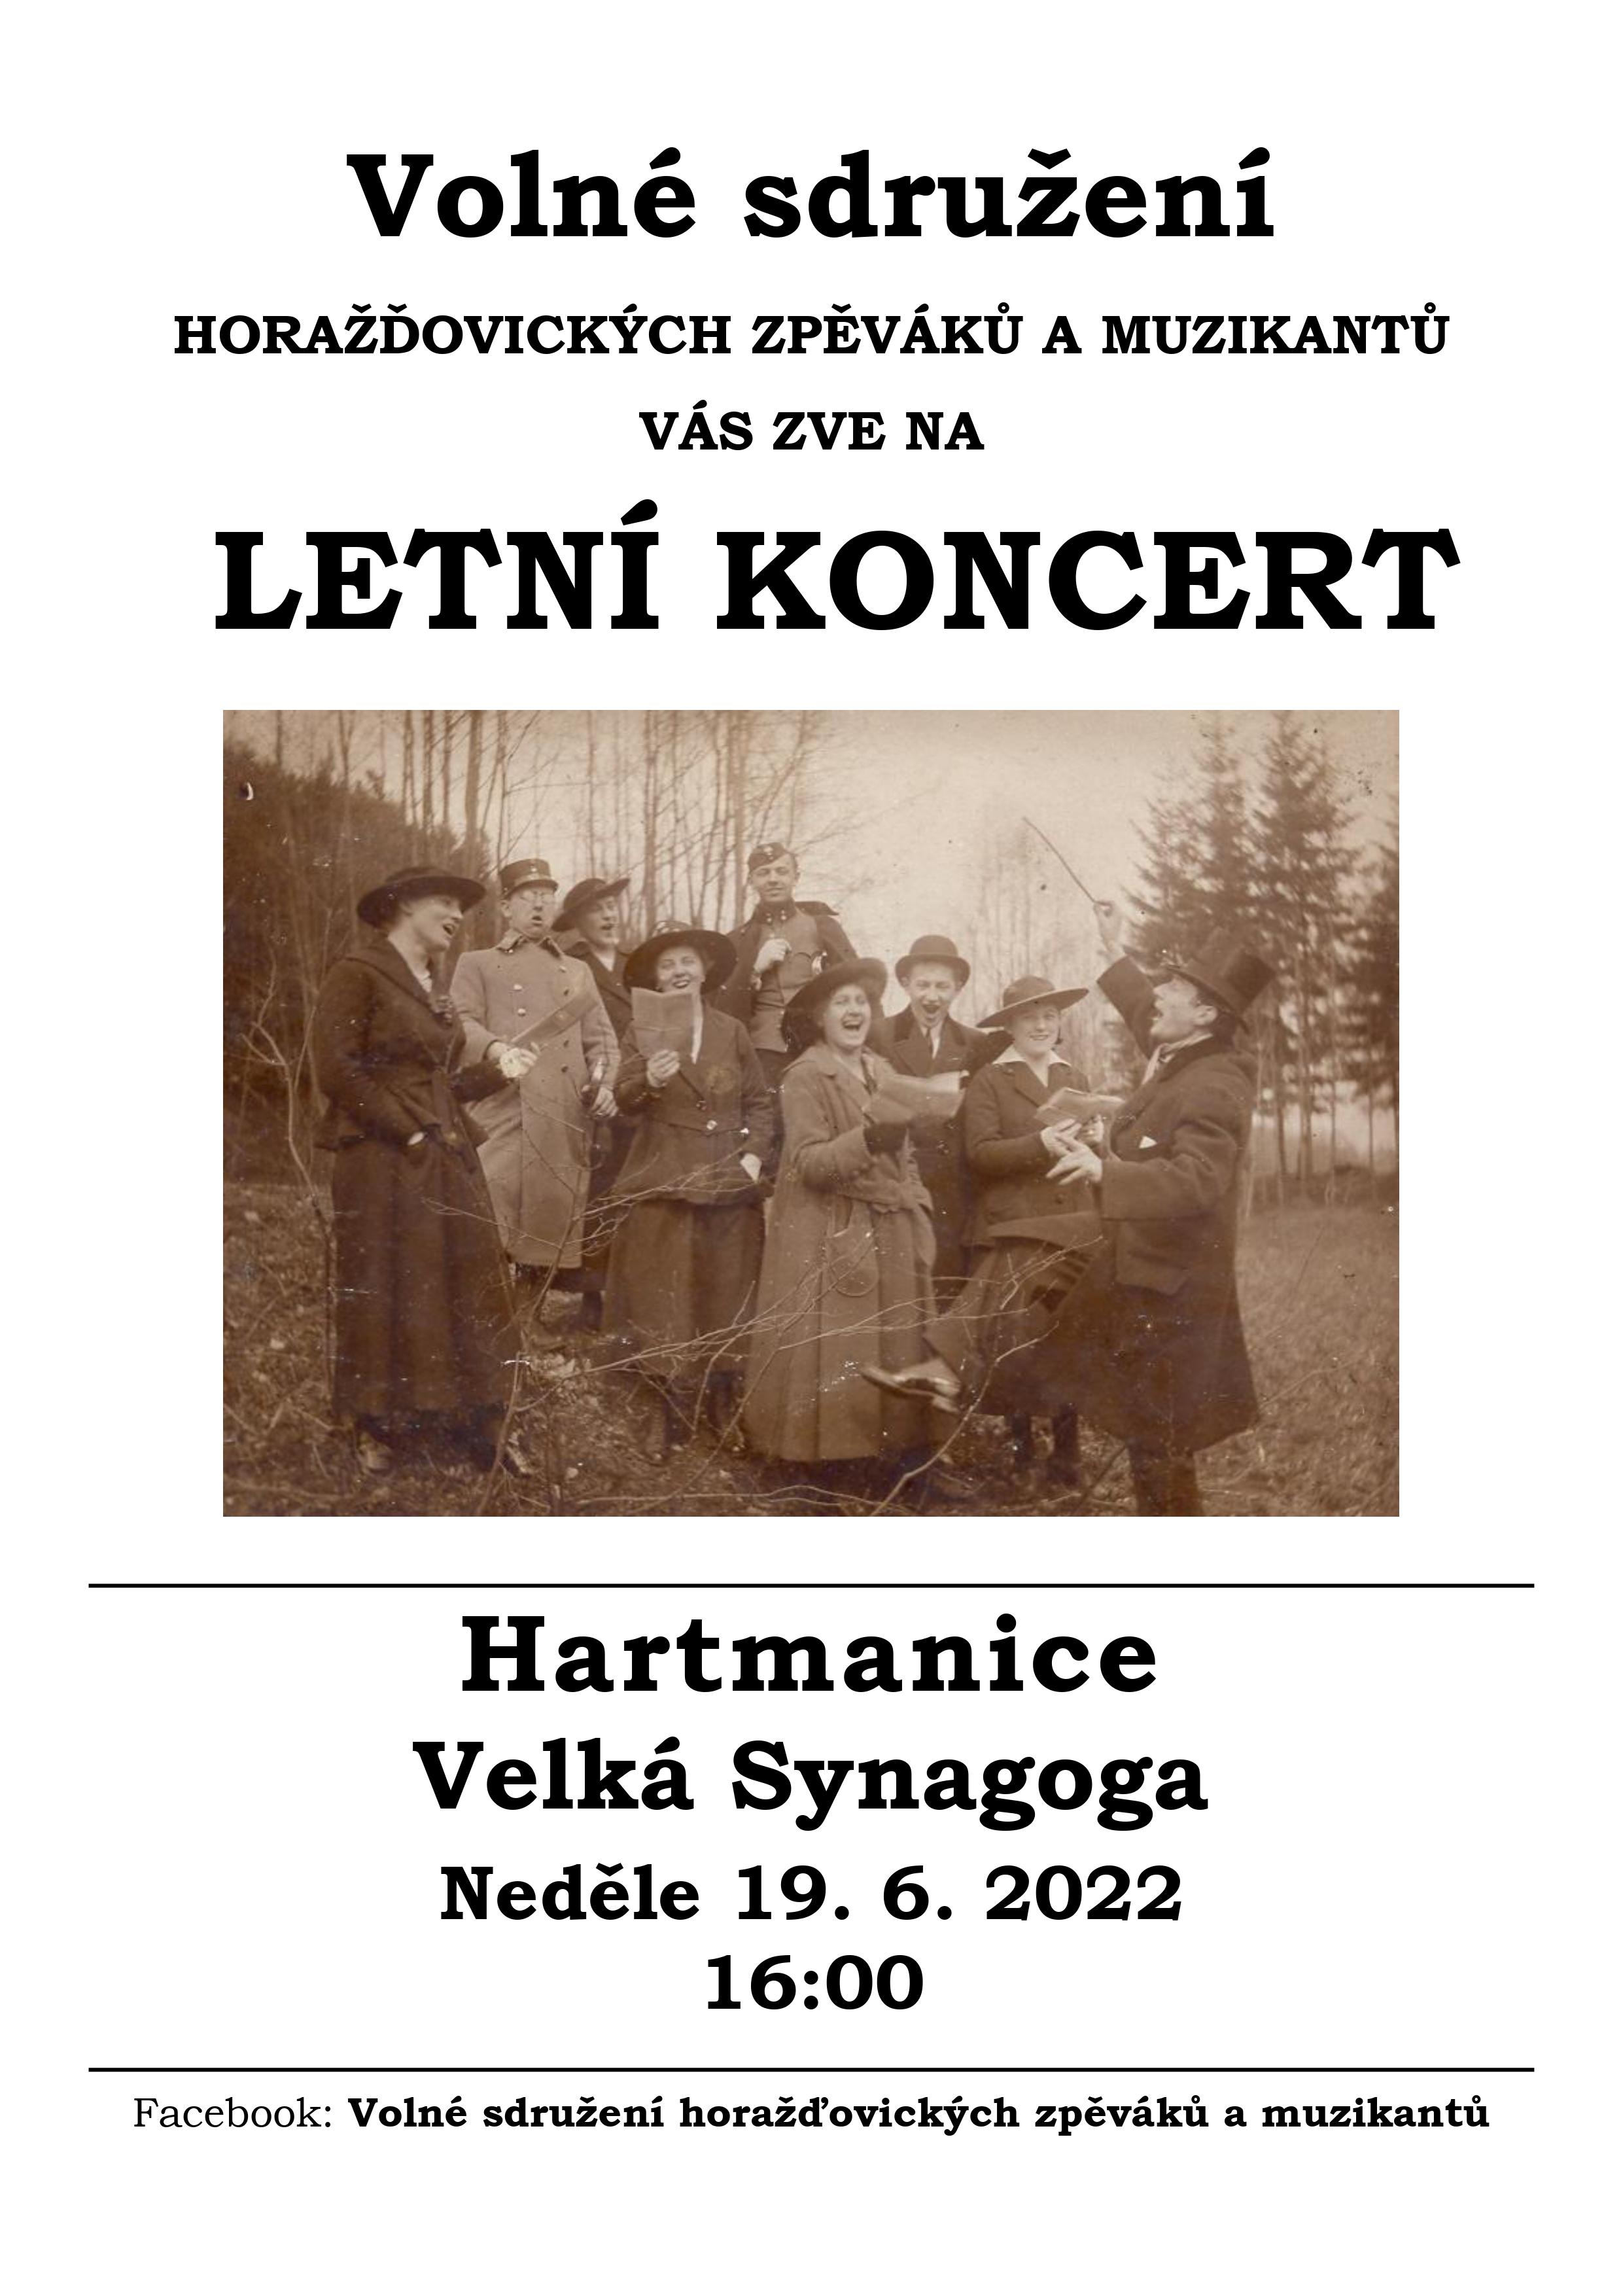 Plakát na koncert Volného sdružení horažďovických zpěváků a muzikantů